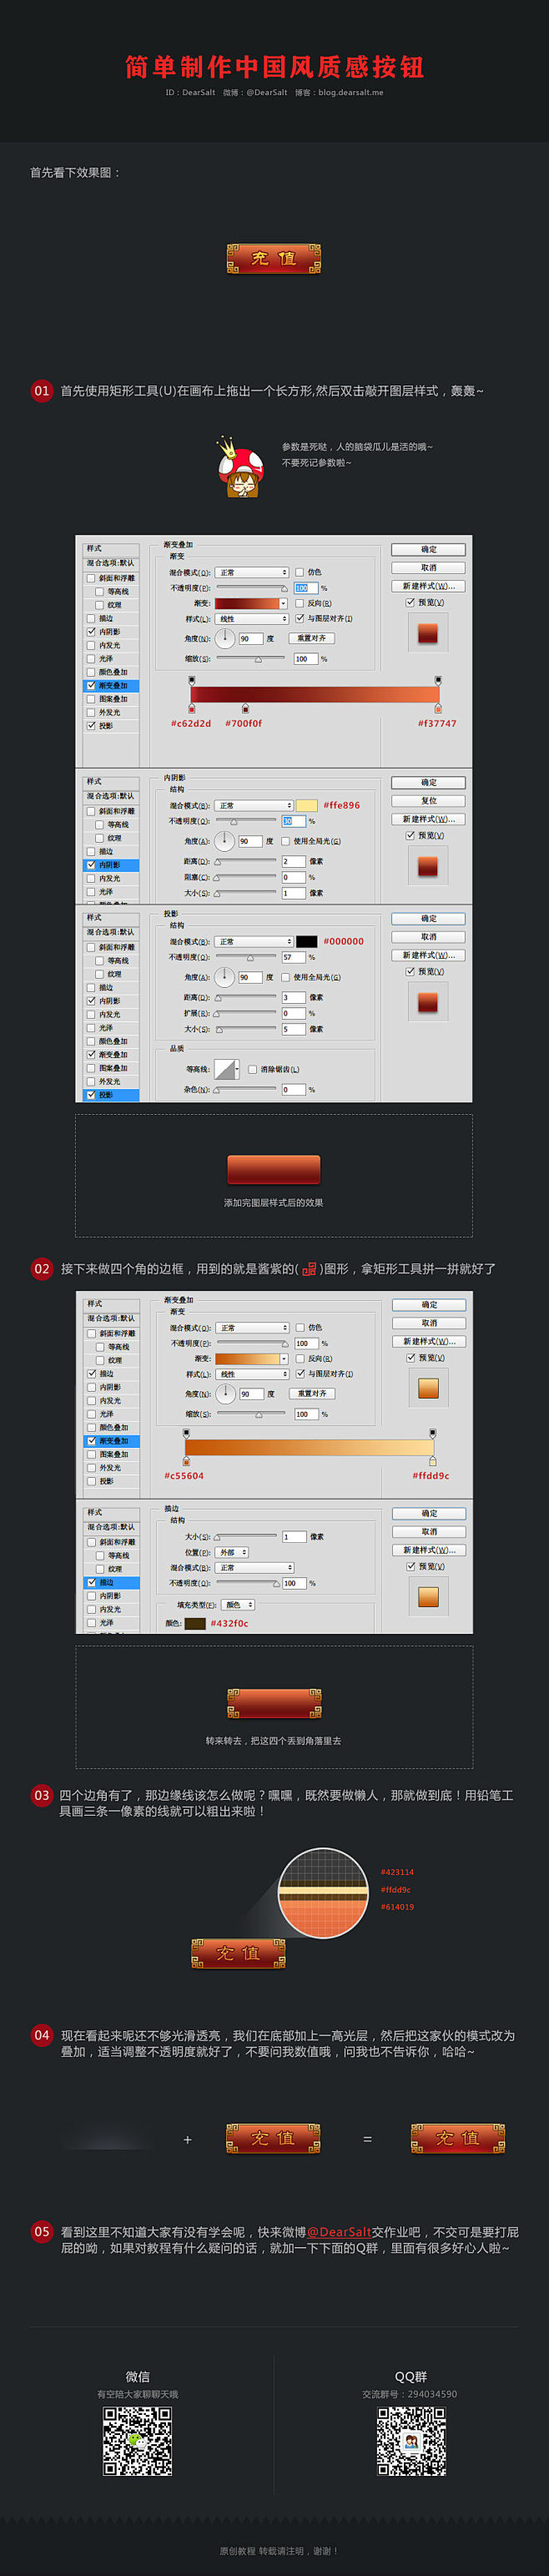 简单制作中国风质感按钮 |GAMEUI-...